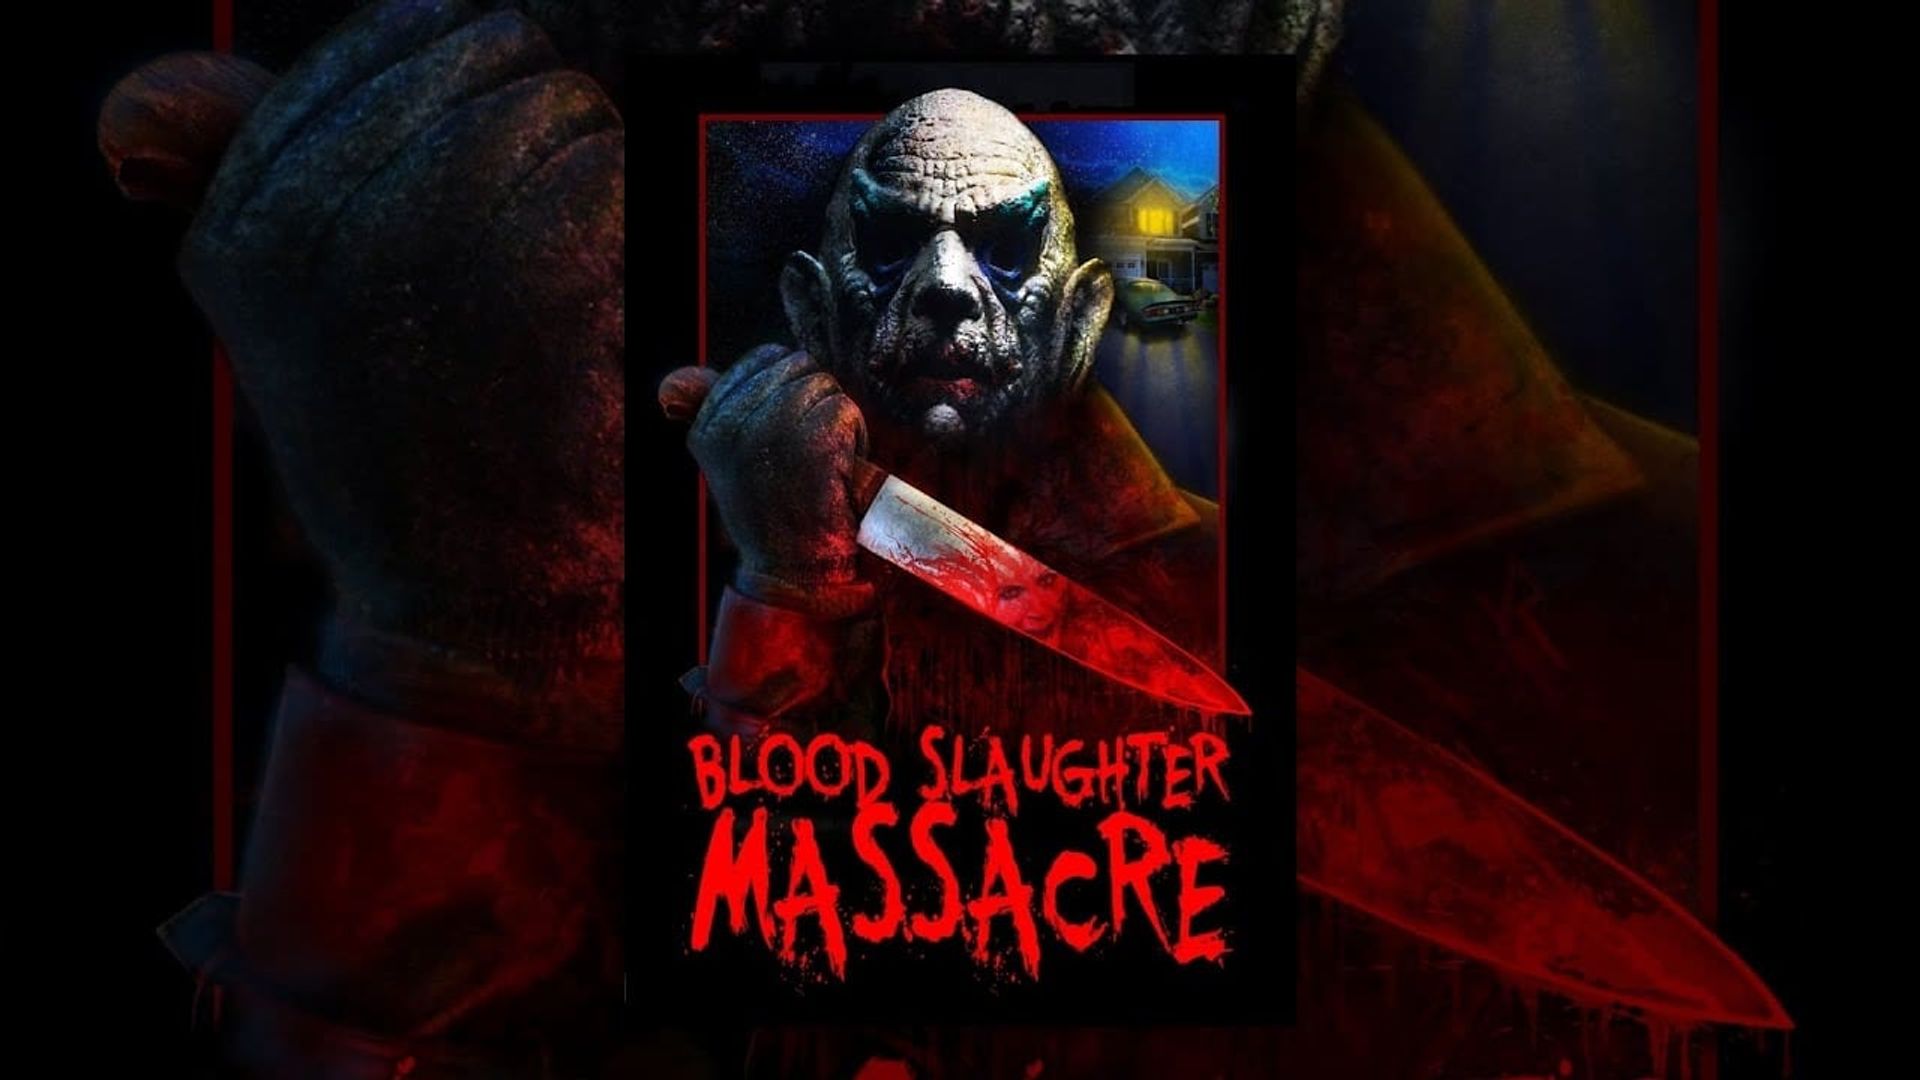 Blood Slaughter Massacre background